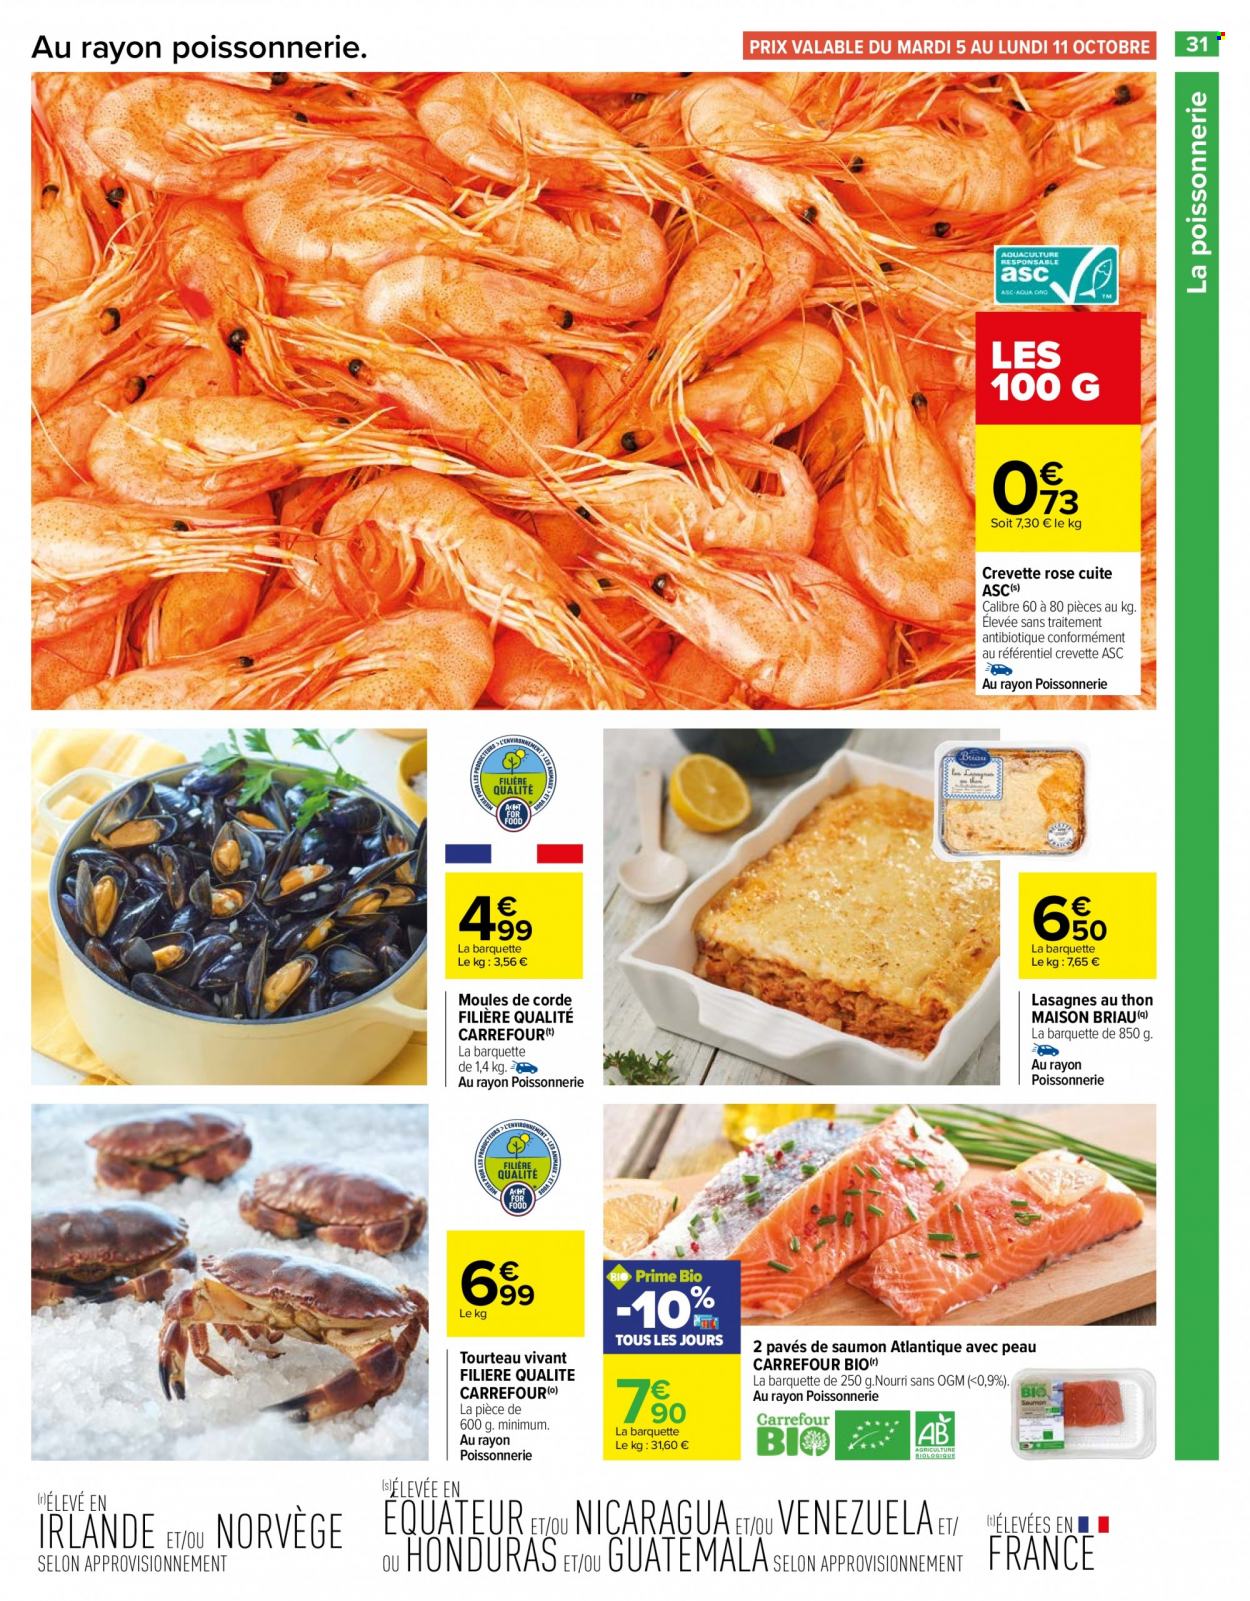 thumbnail - Catalogue Carrefour Hypermarchés - 05/10/2021 - 18/10/2021 - Produits soldés - saumon, crevettes, tourteau, moules, crevette rosé, pavés de saumon, lasagnes, maison. Page 31.